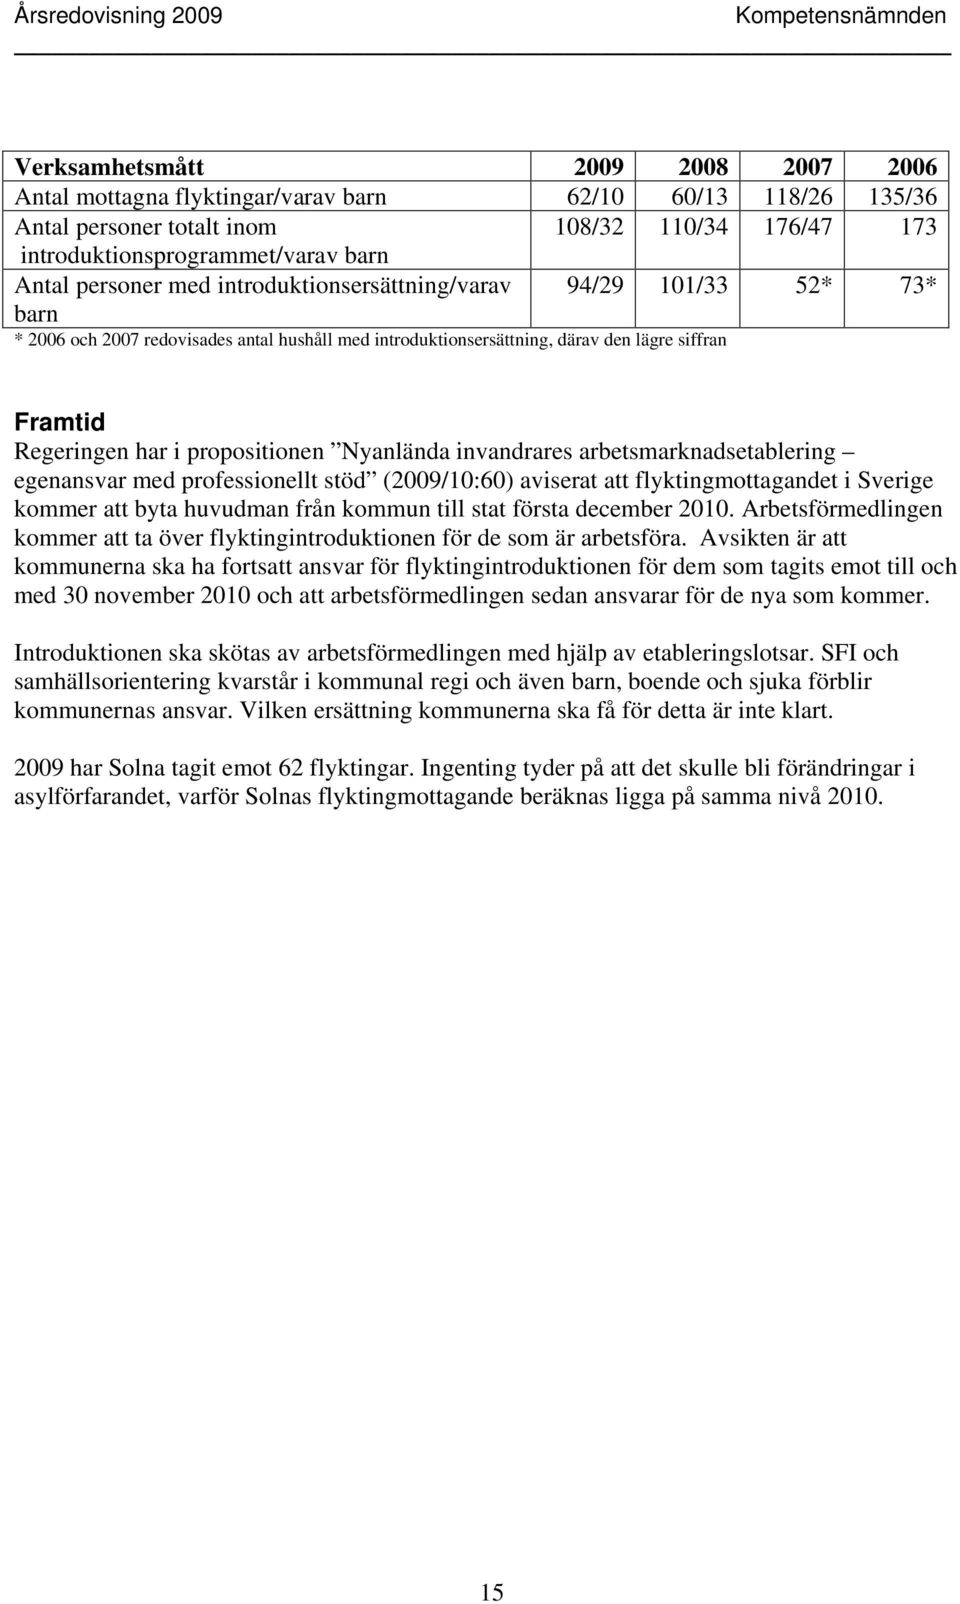 propositionen Nyanlända invandrares arbetsmarknadsetablering egenansvar med professionellt stöd (2009/10:60) aviserat att flyktingmottagandet i Sverige kommer att byta huvudman från kommun till stat